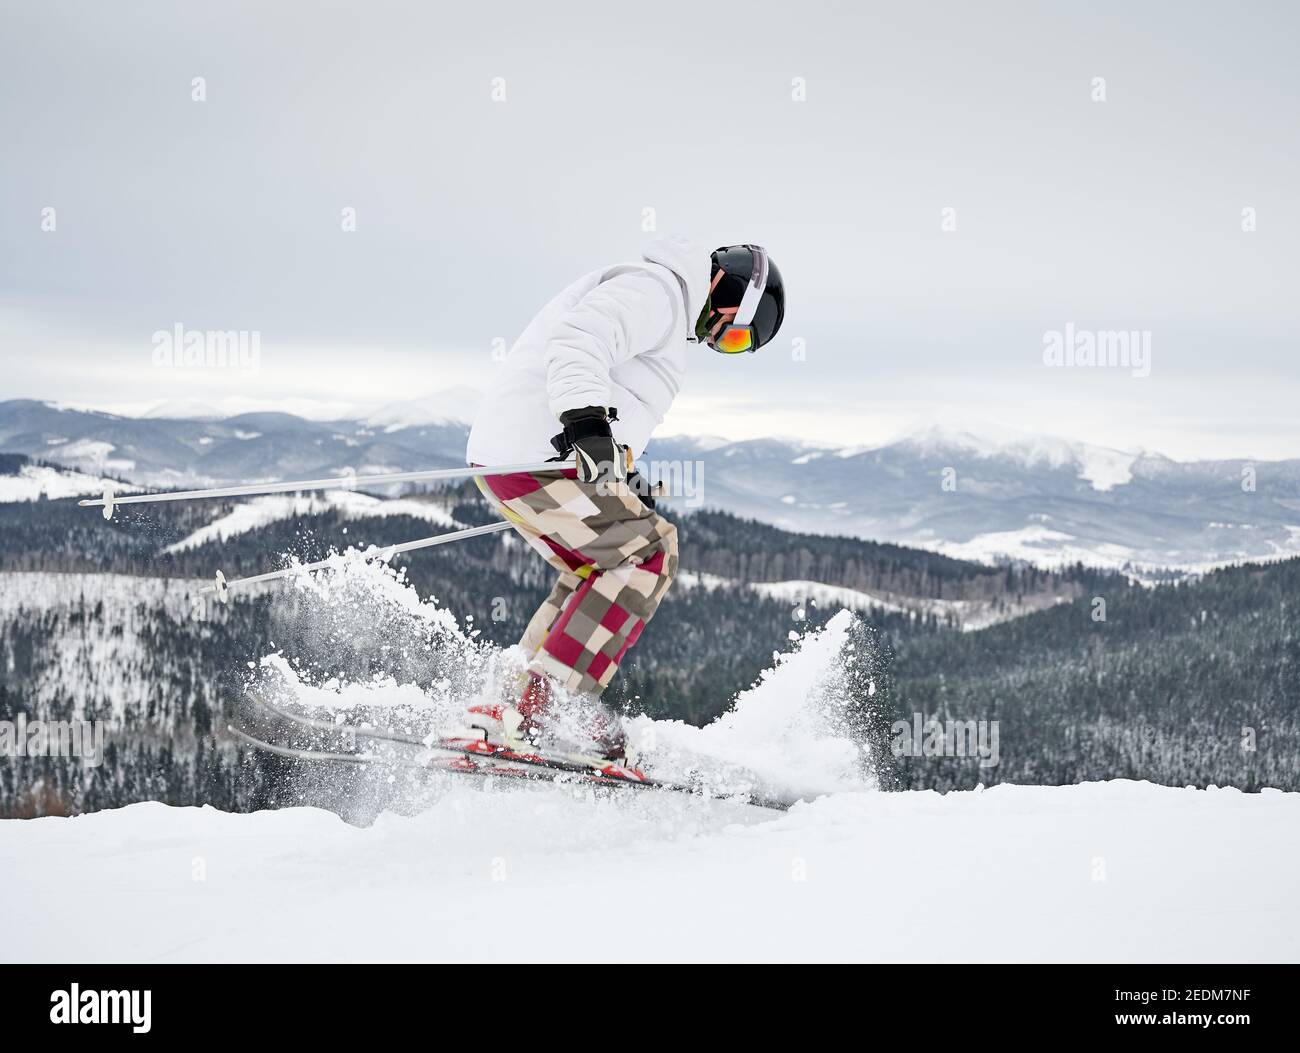 Ski alpin sur toute la longueur sur la neige poudreuse fraîche dans les  montagnes d'hiver. Homme freerider dans le pantalon de ski d'hiver faisant  sauter tout en glissant sur les pistes enneigées.